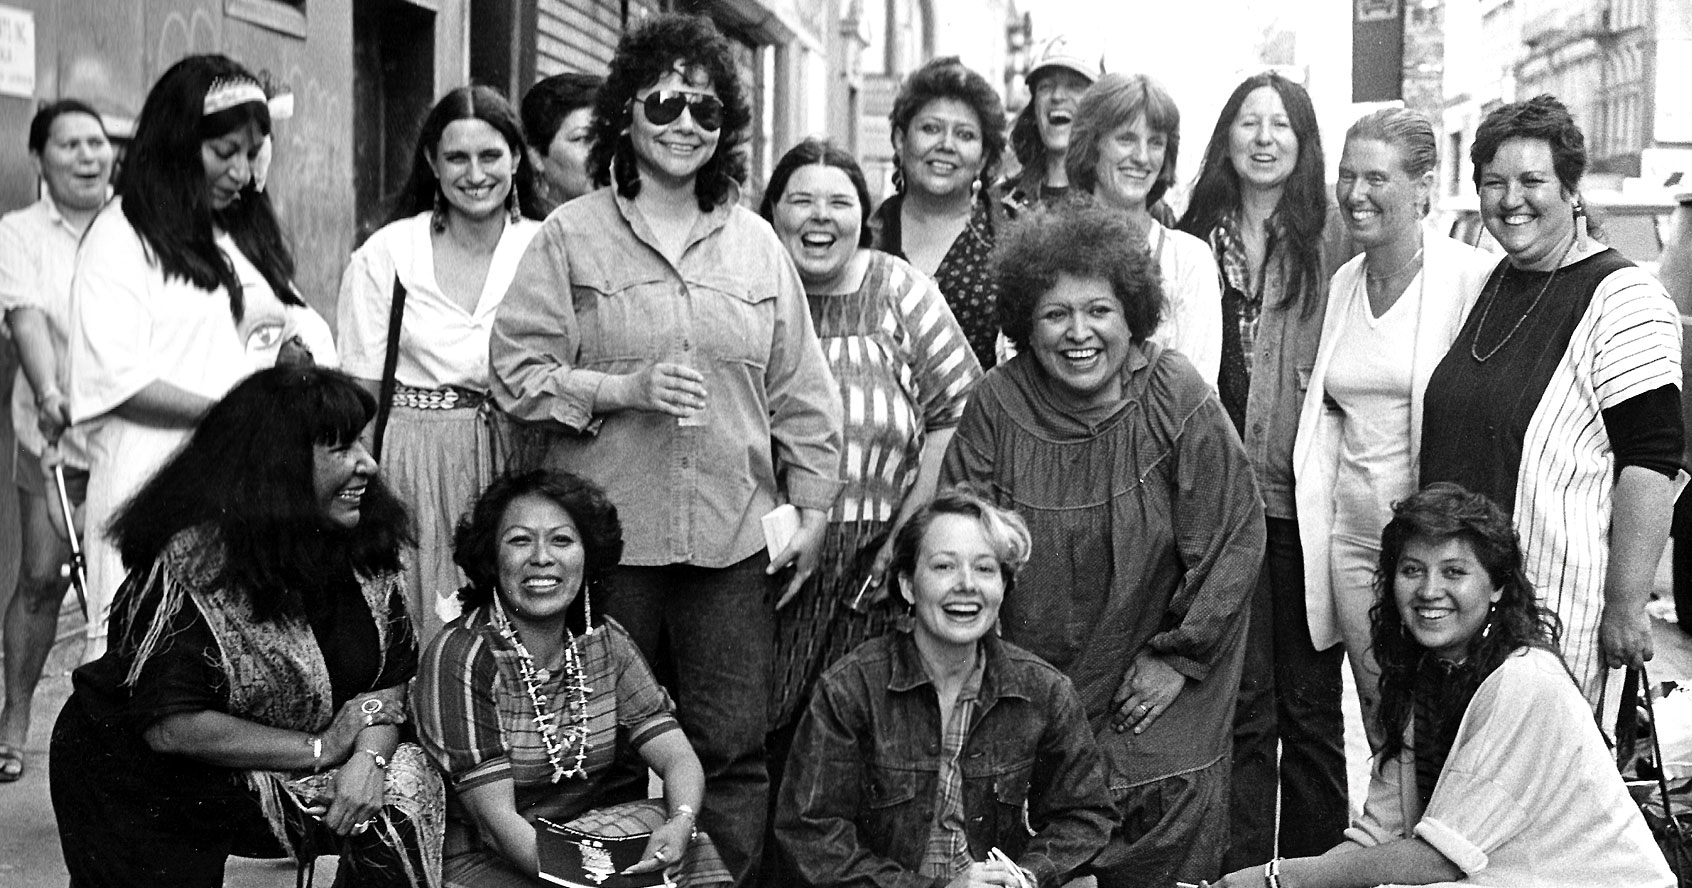 1985で撮影された、アメリカのインディアンコミュニティハウスギャラリーの外にある展覧会のアーティスト、ウィートオブスイートグラス、シダーアンドセージ、友人、コミュニティメンバーの写真。